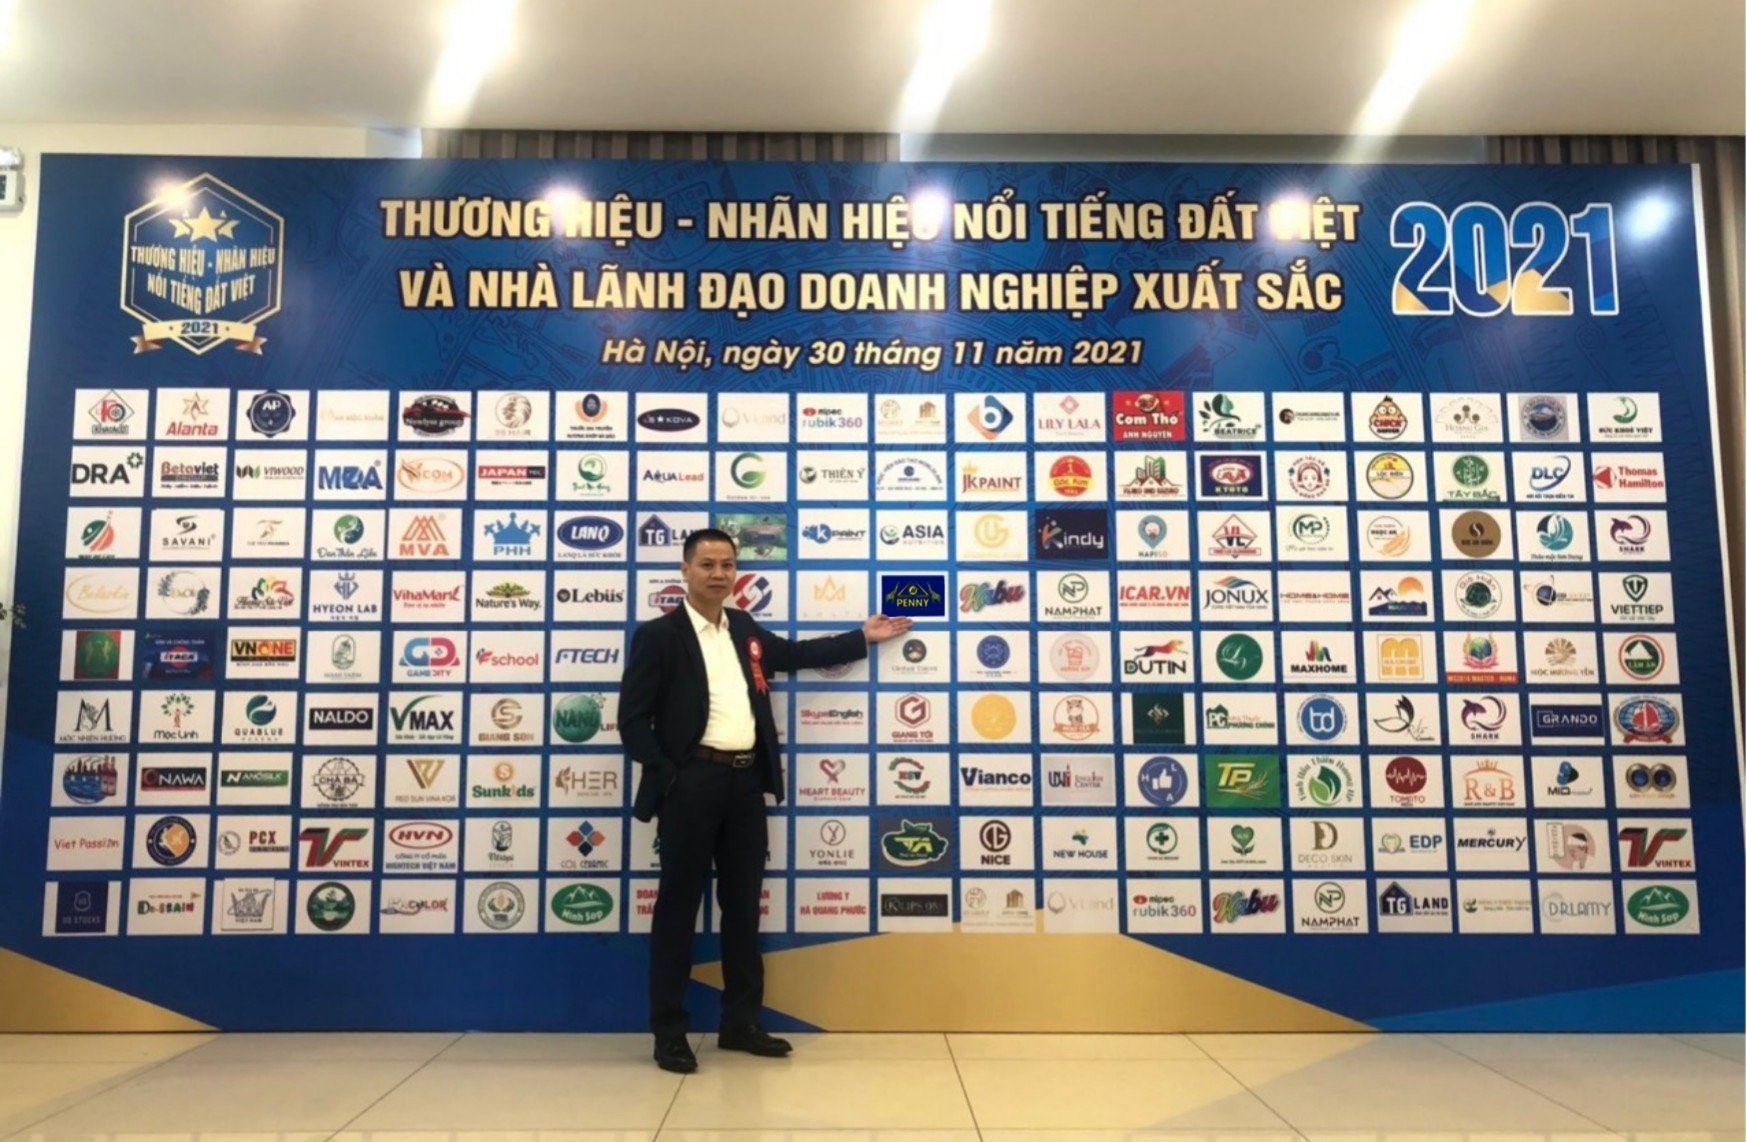 Thương hiệu PENNY lọt top 10 thương hiệu Nổi Tiếng Đất Việt năm 2021